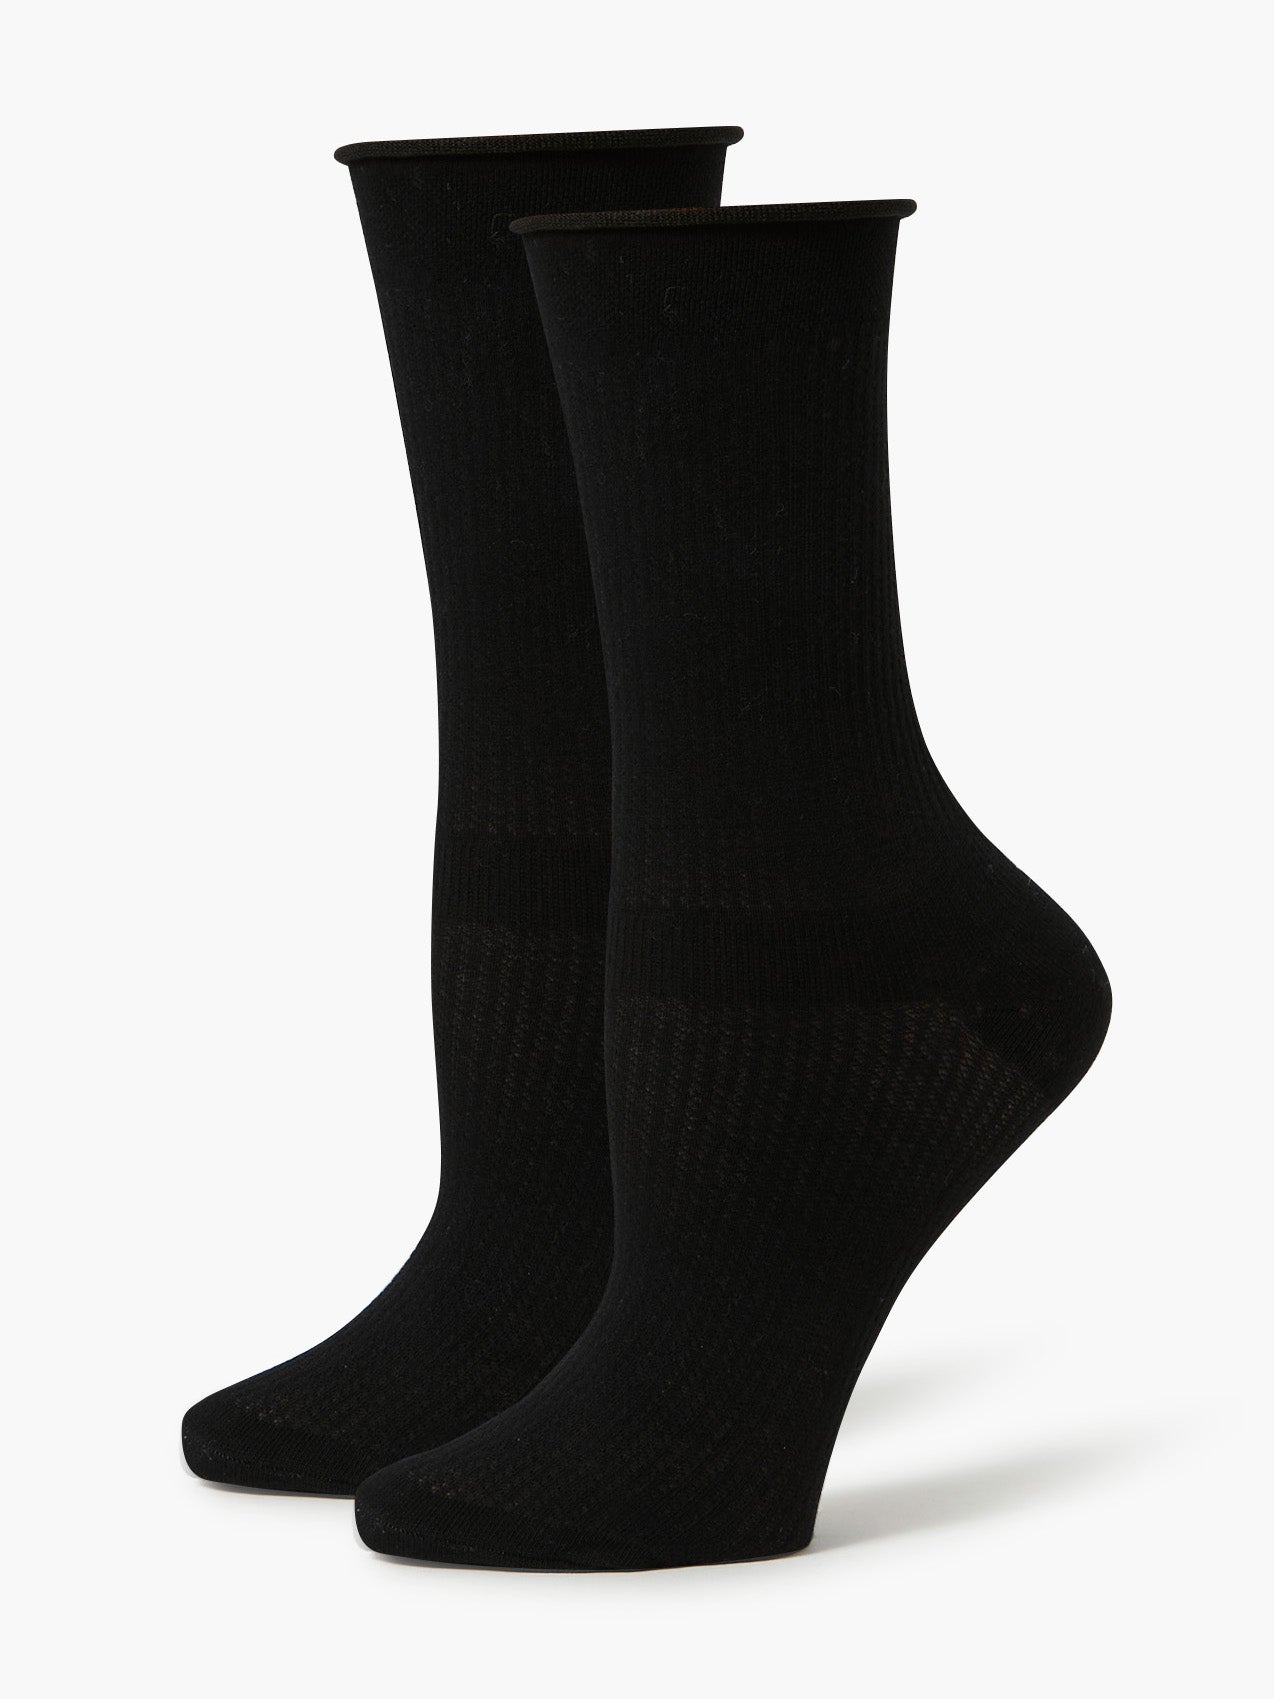 גרביים גבוהות בטקסטורה סרוגה / נשים- FOREVER 21|פוראבר 21